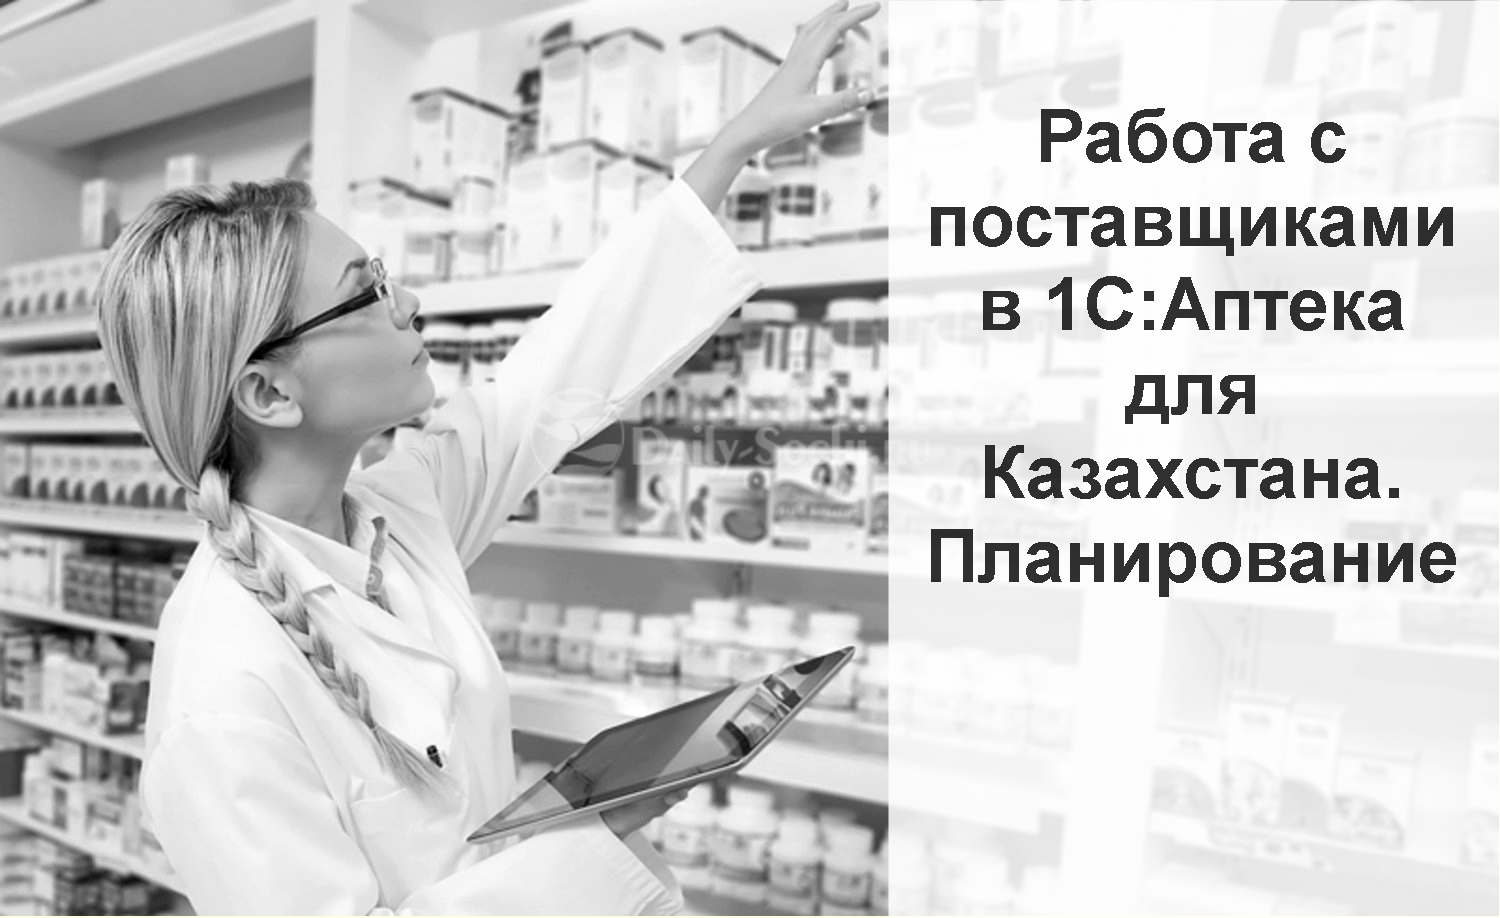 Вебинар «Работа с поставщиками в конфигурации «1С:Аптека для Казахстана». Часть первая: Планирование» 23 апреля 2020 года